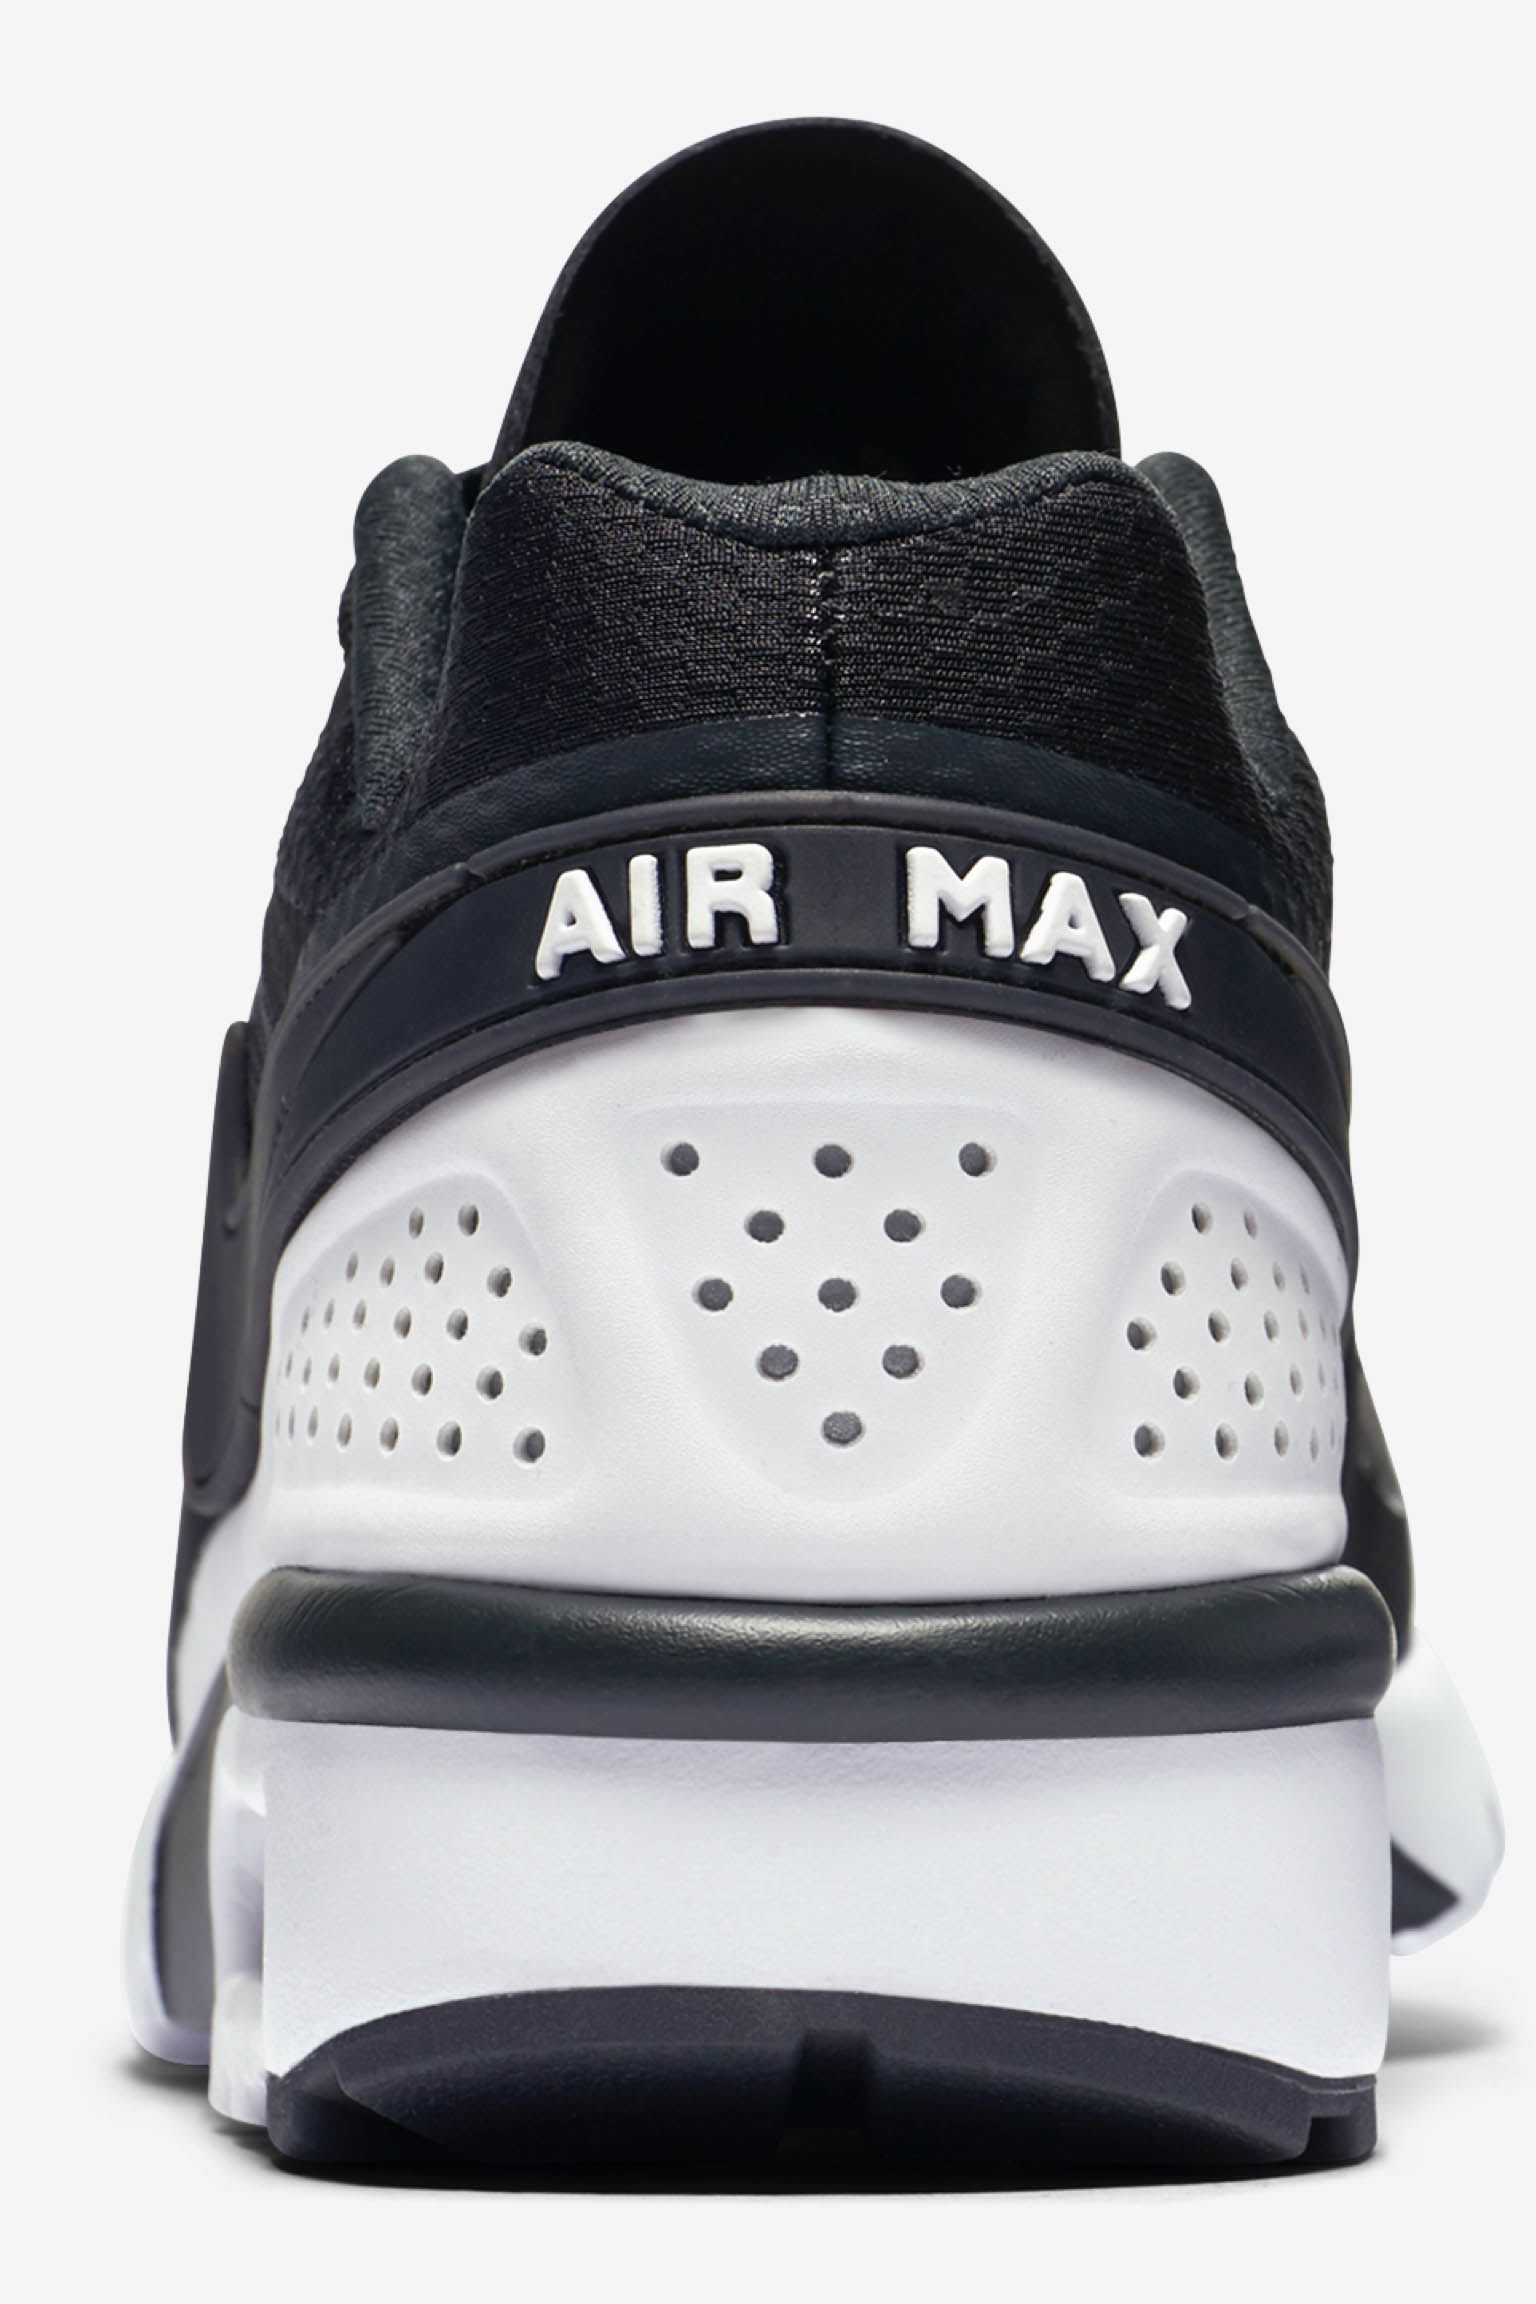 تعريف الدهون Nike Air Max BW Ultra 'Black & White' Release Date. Nike SNKRS تعريف الدهون